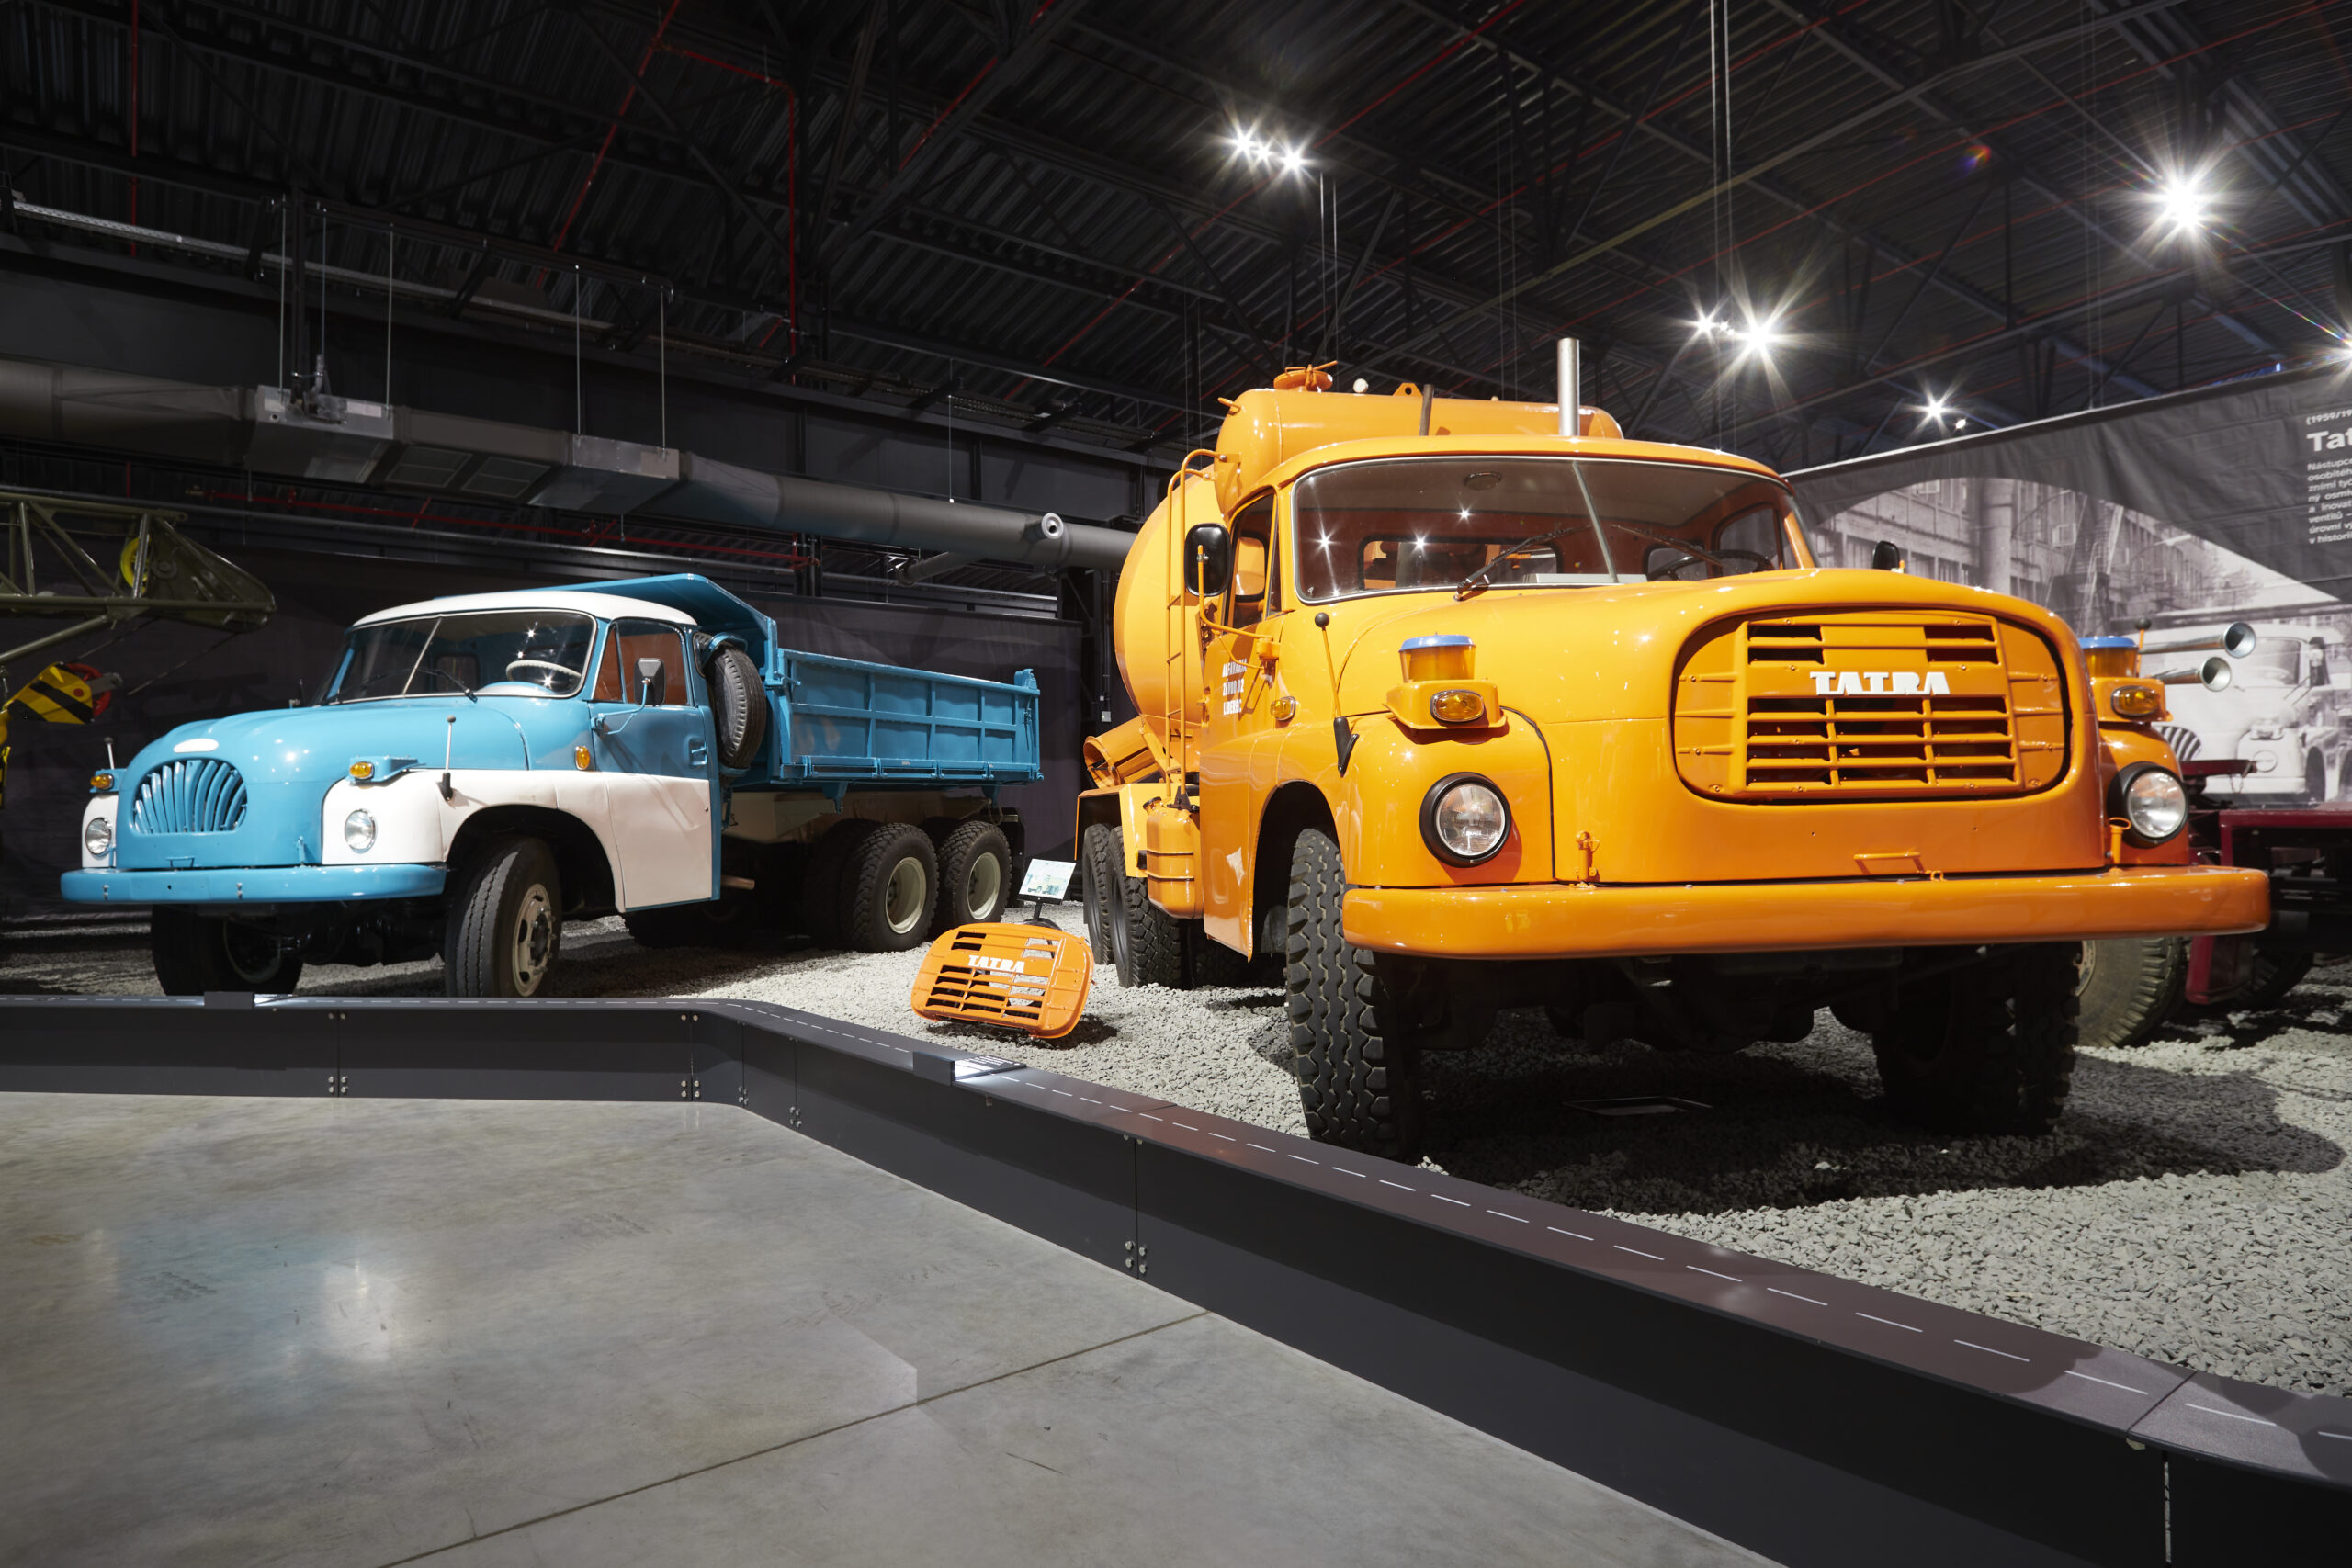 Muzeum nákladních automobilů Tatra Kopřivnice